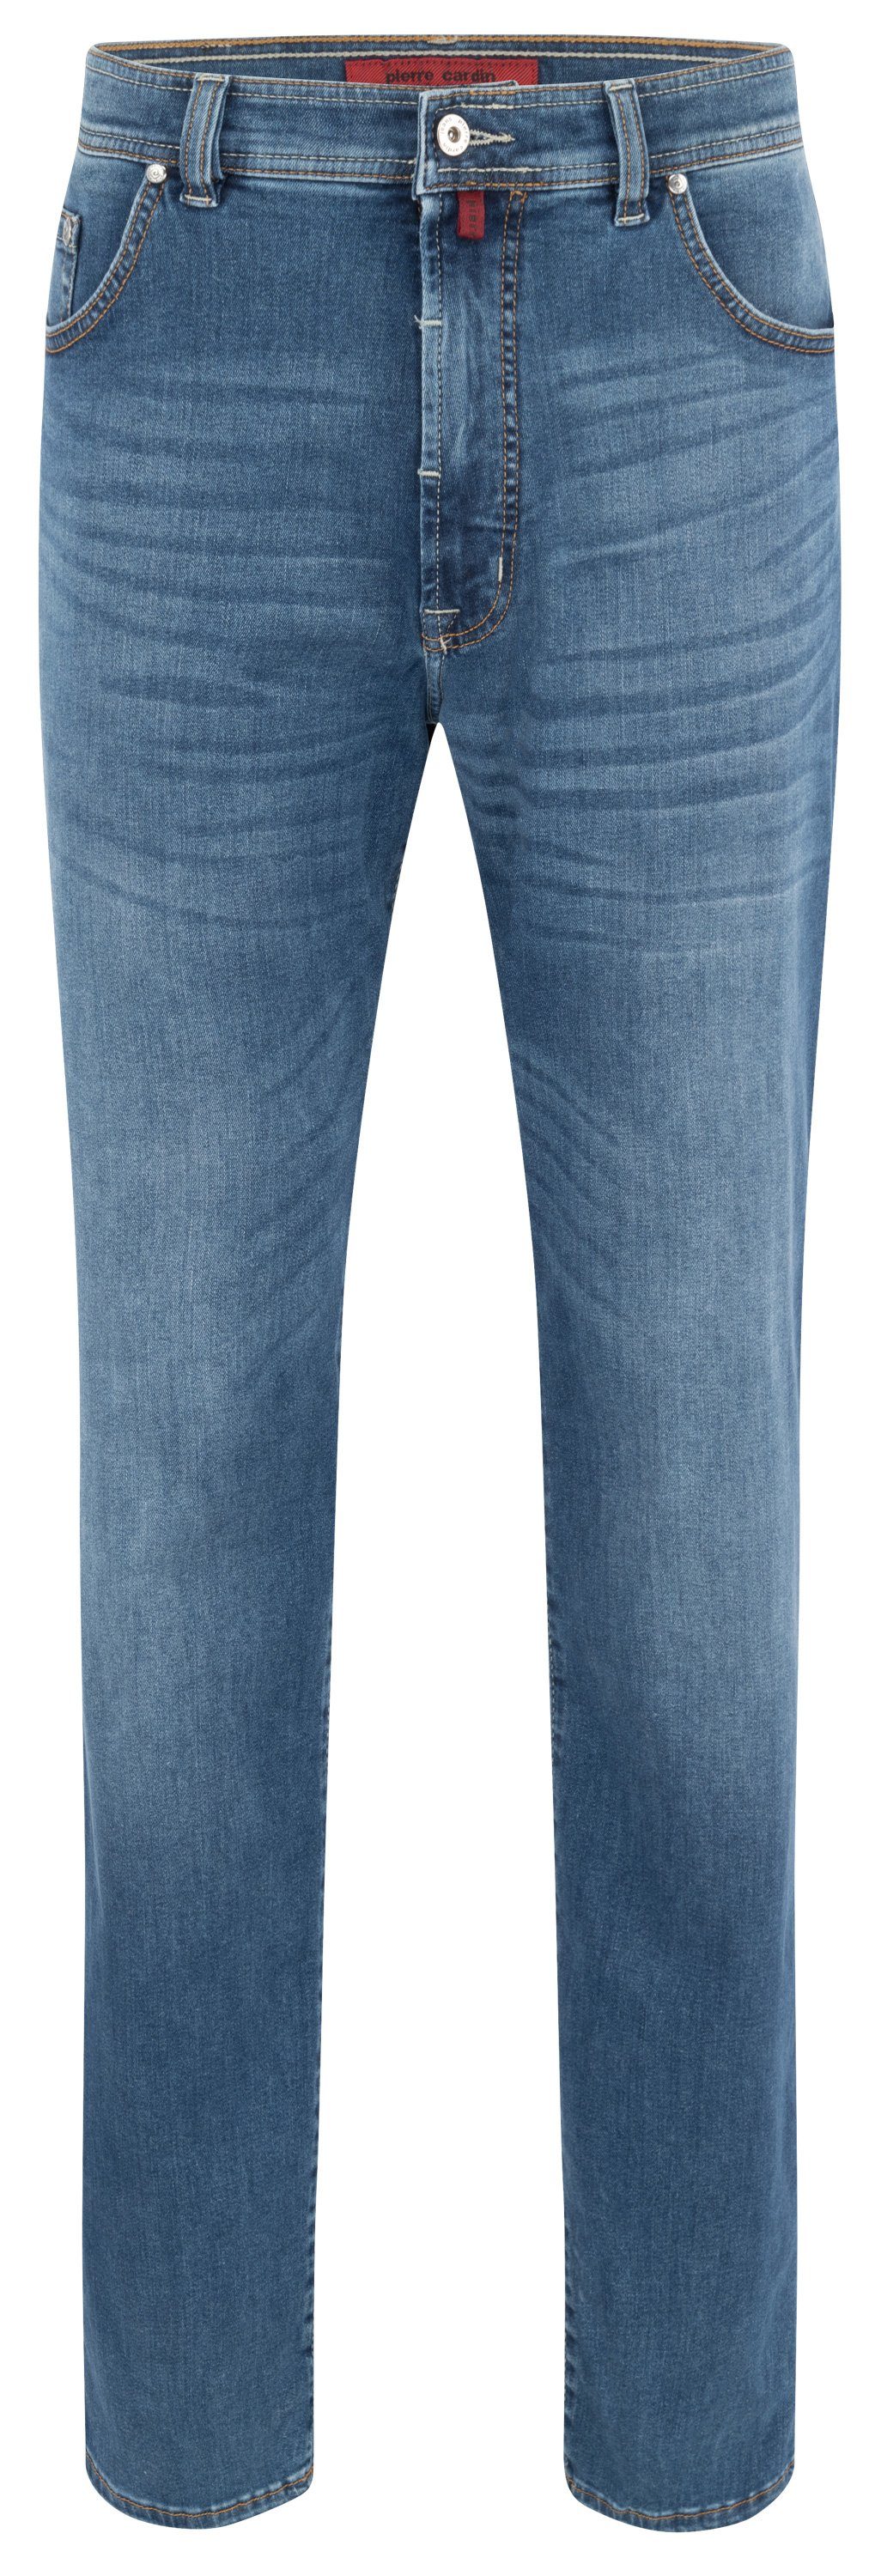 Pierre Cardin 5-Pocket-Jeans PIERRE CARDIN DIJON dark blue used 32310 7004.6812